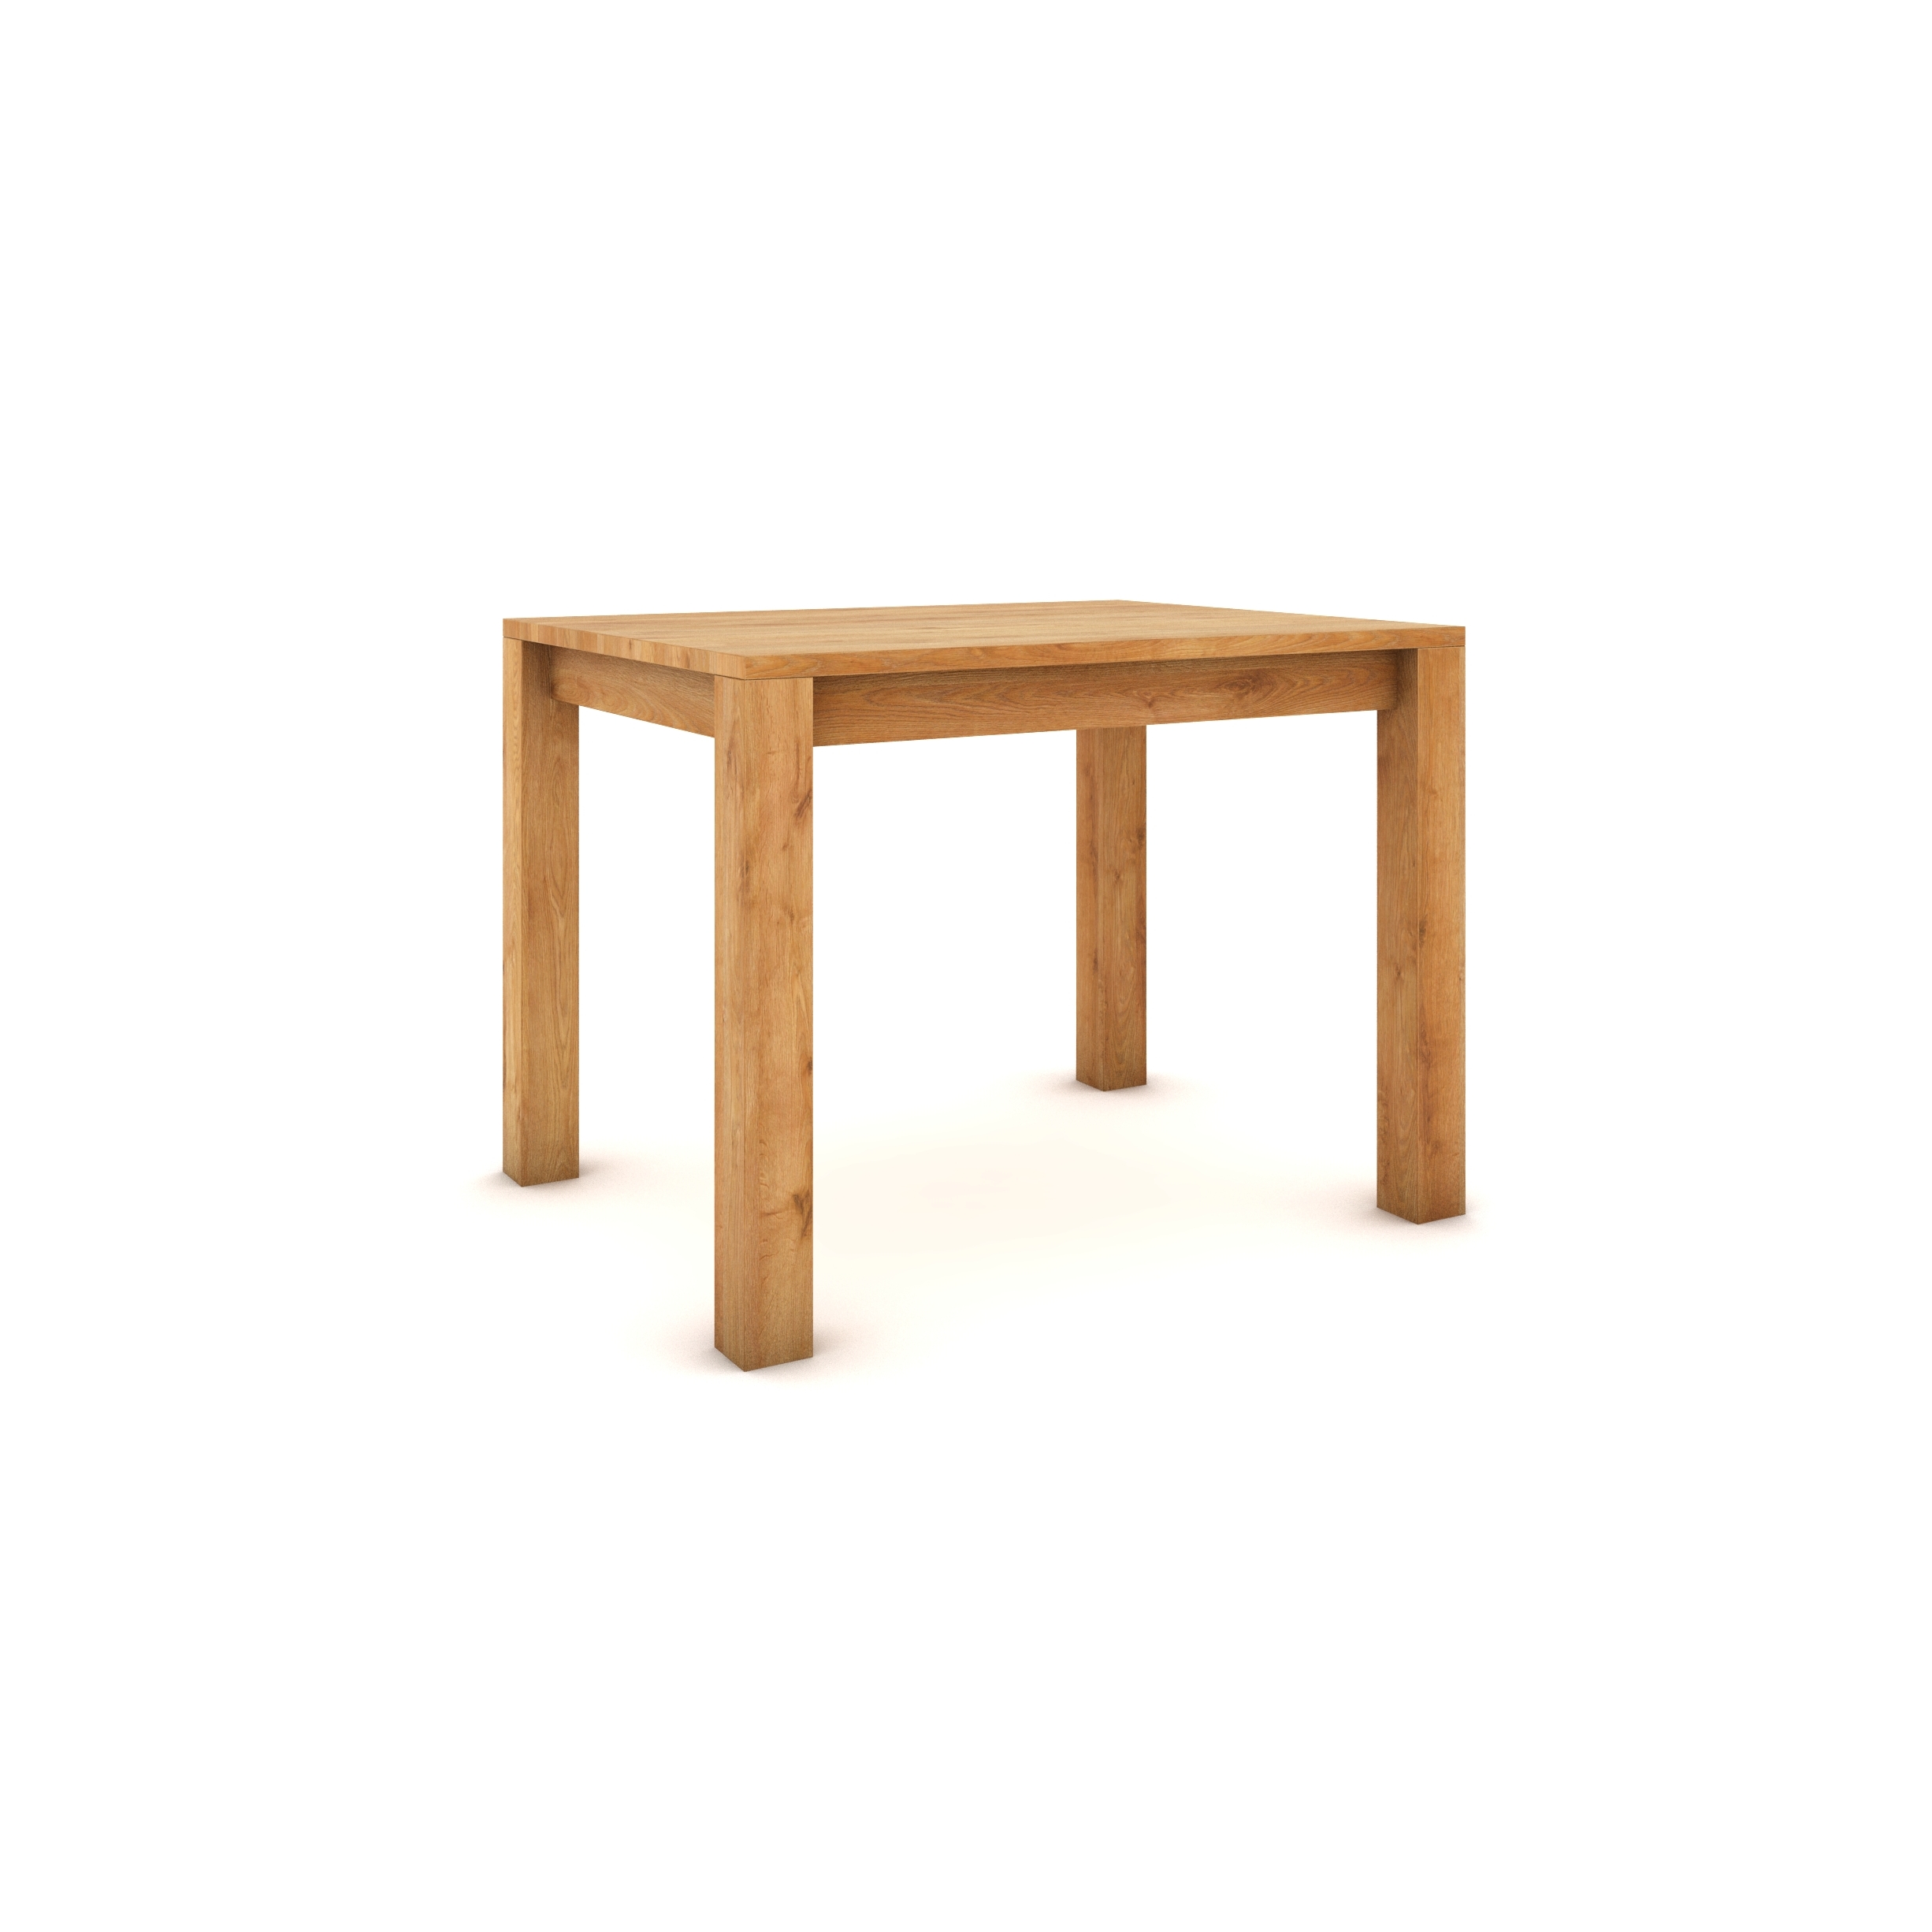 Dubový stůl 100 x 80 cm , přírodní, hedvábně polomatný